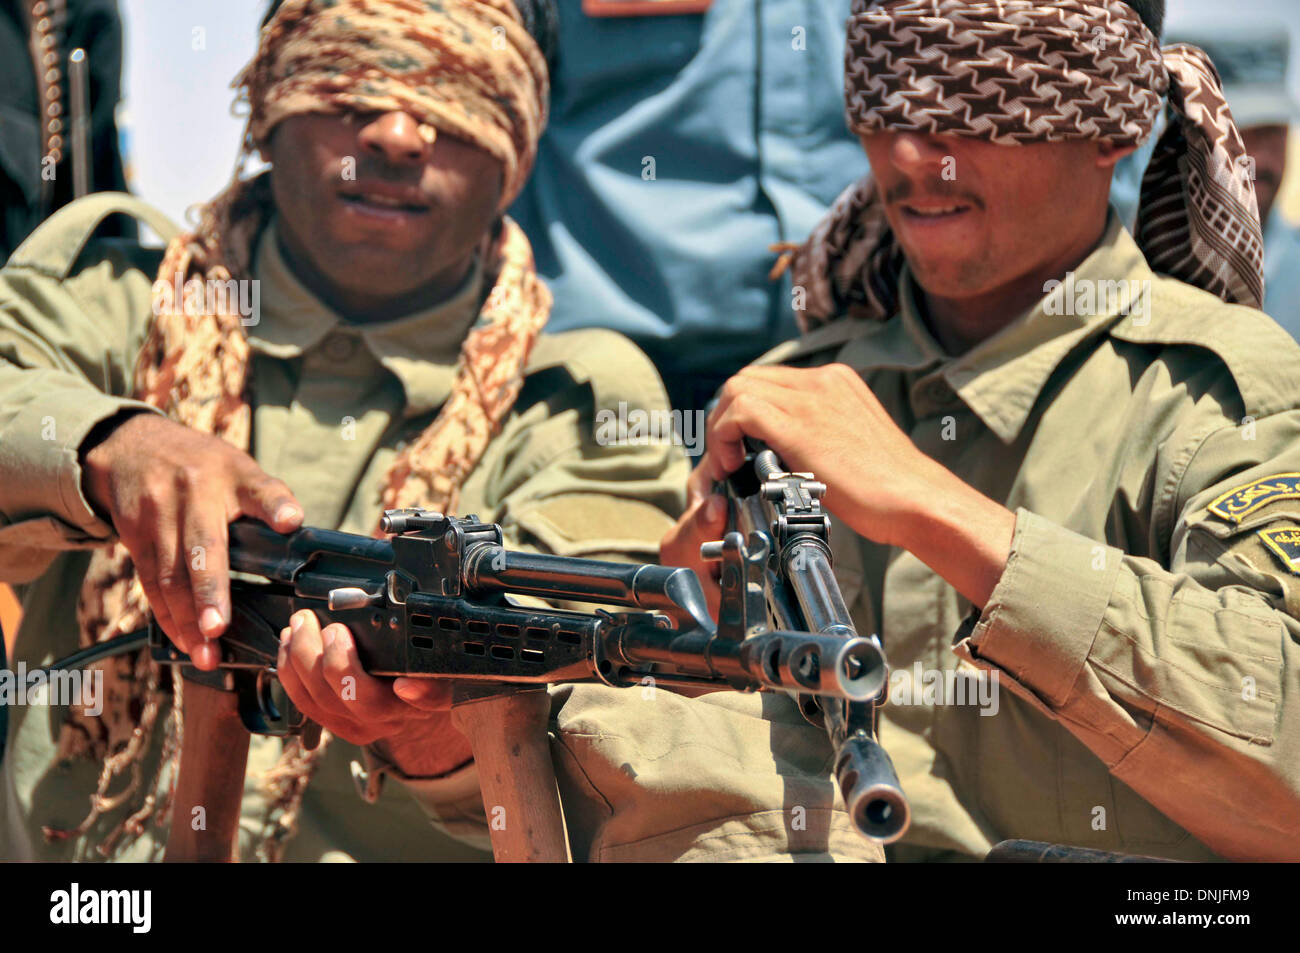 Afghanische Polizei Offiziere zeigen ihre Waffen-Expertise durch Demontage und Montage AK-47 Gewehre, während im regionalen Ausbildungszentrum ALP 6. Juni 2013 in Lashkar Gah District, Provinz Helmand, Afghanistan die Augen verbunden. Stockfoto